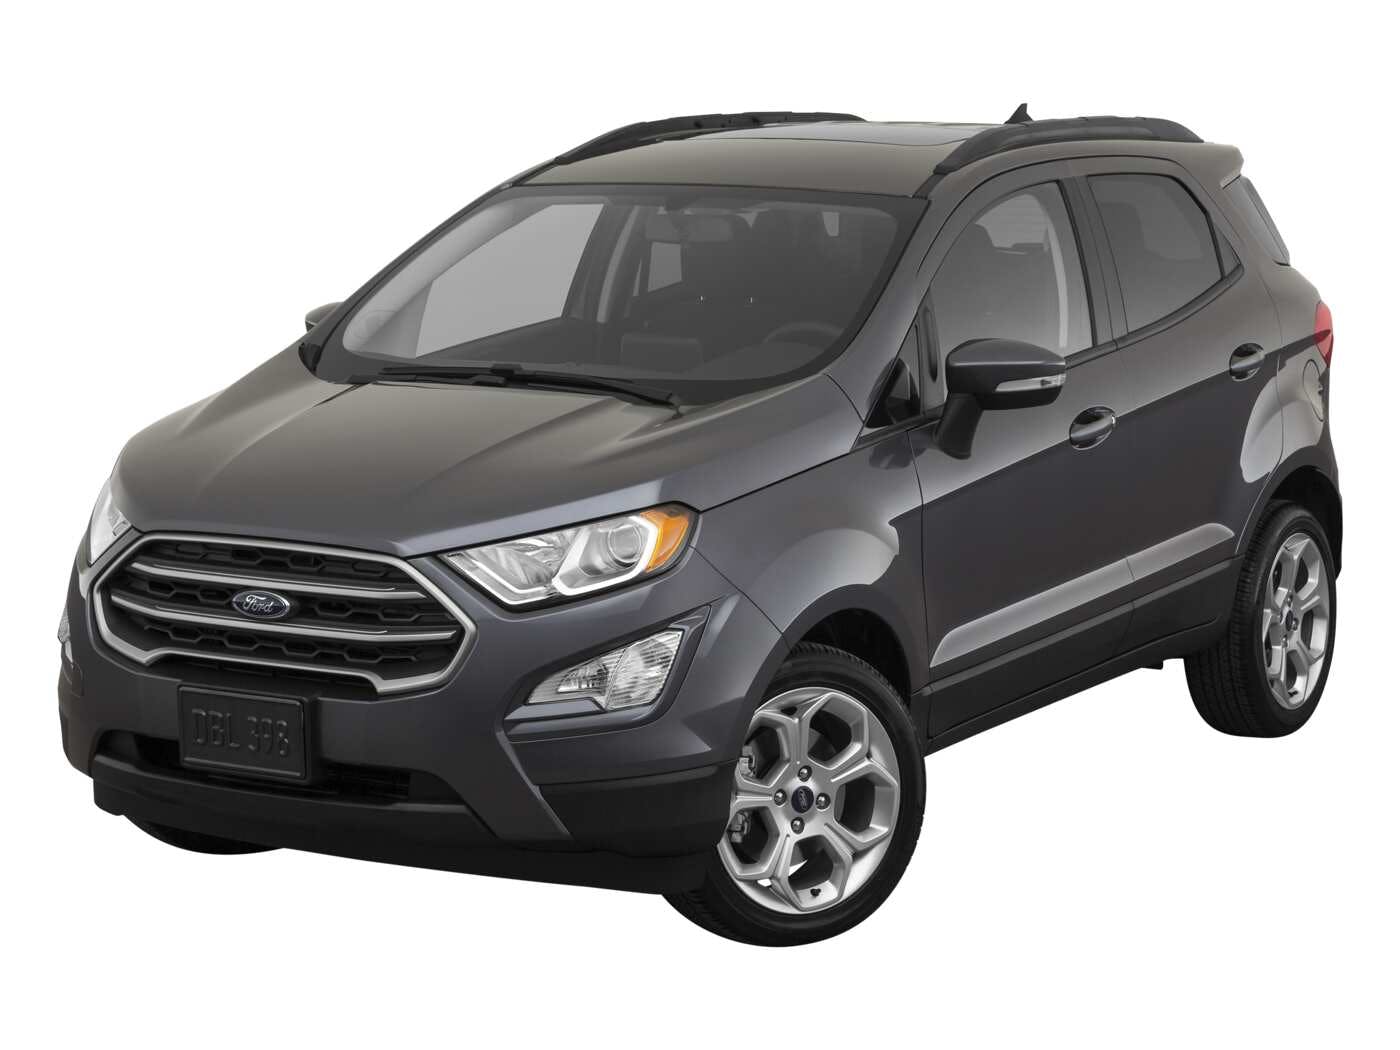 2021 Ford EcoSport Review  Pricing, Trims & Photos - TrueCar